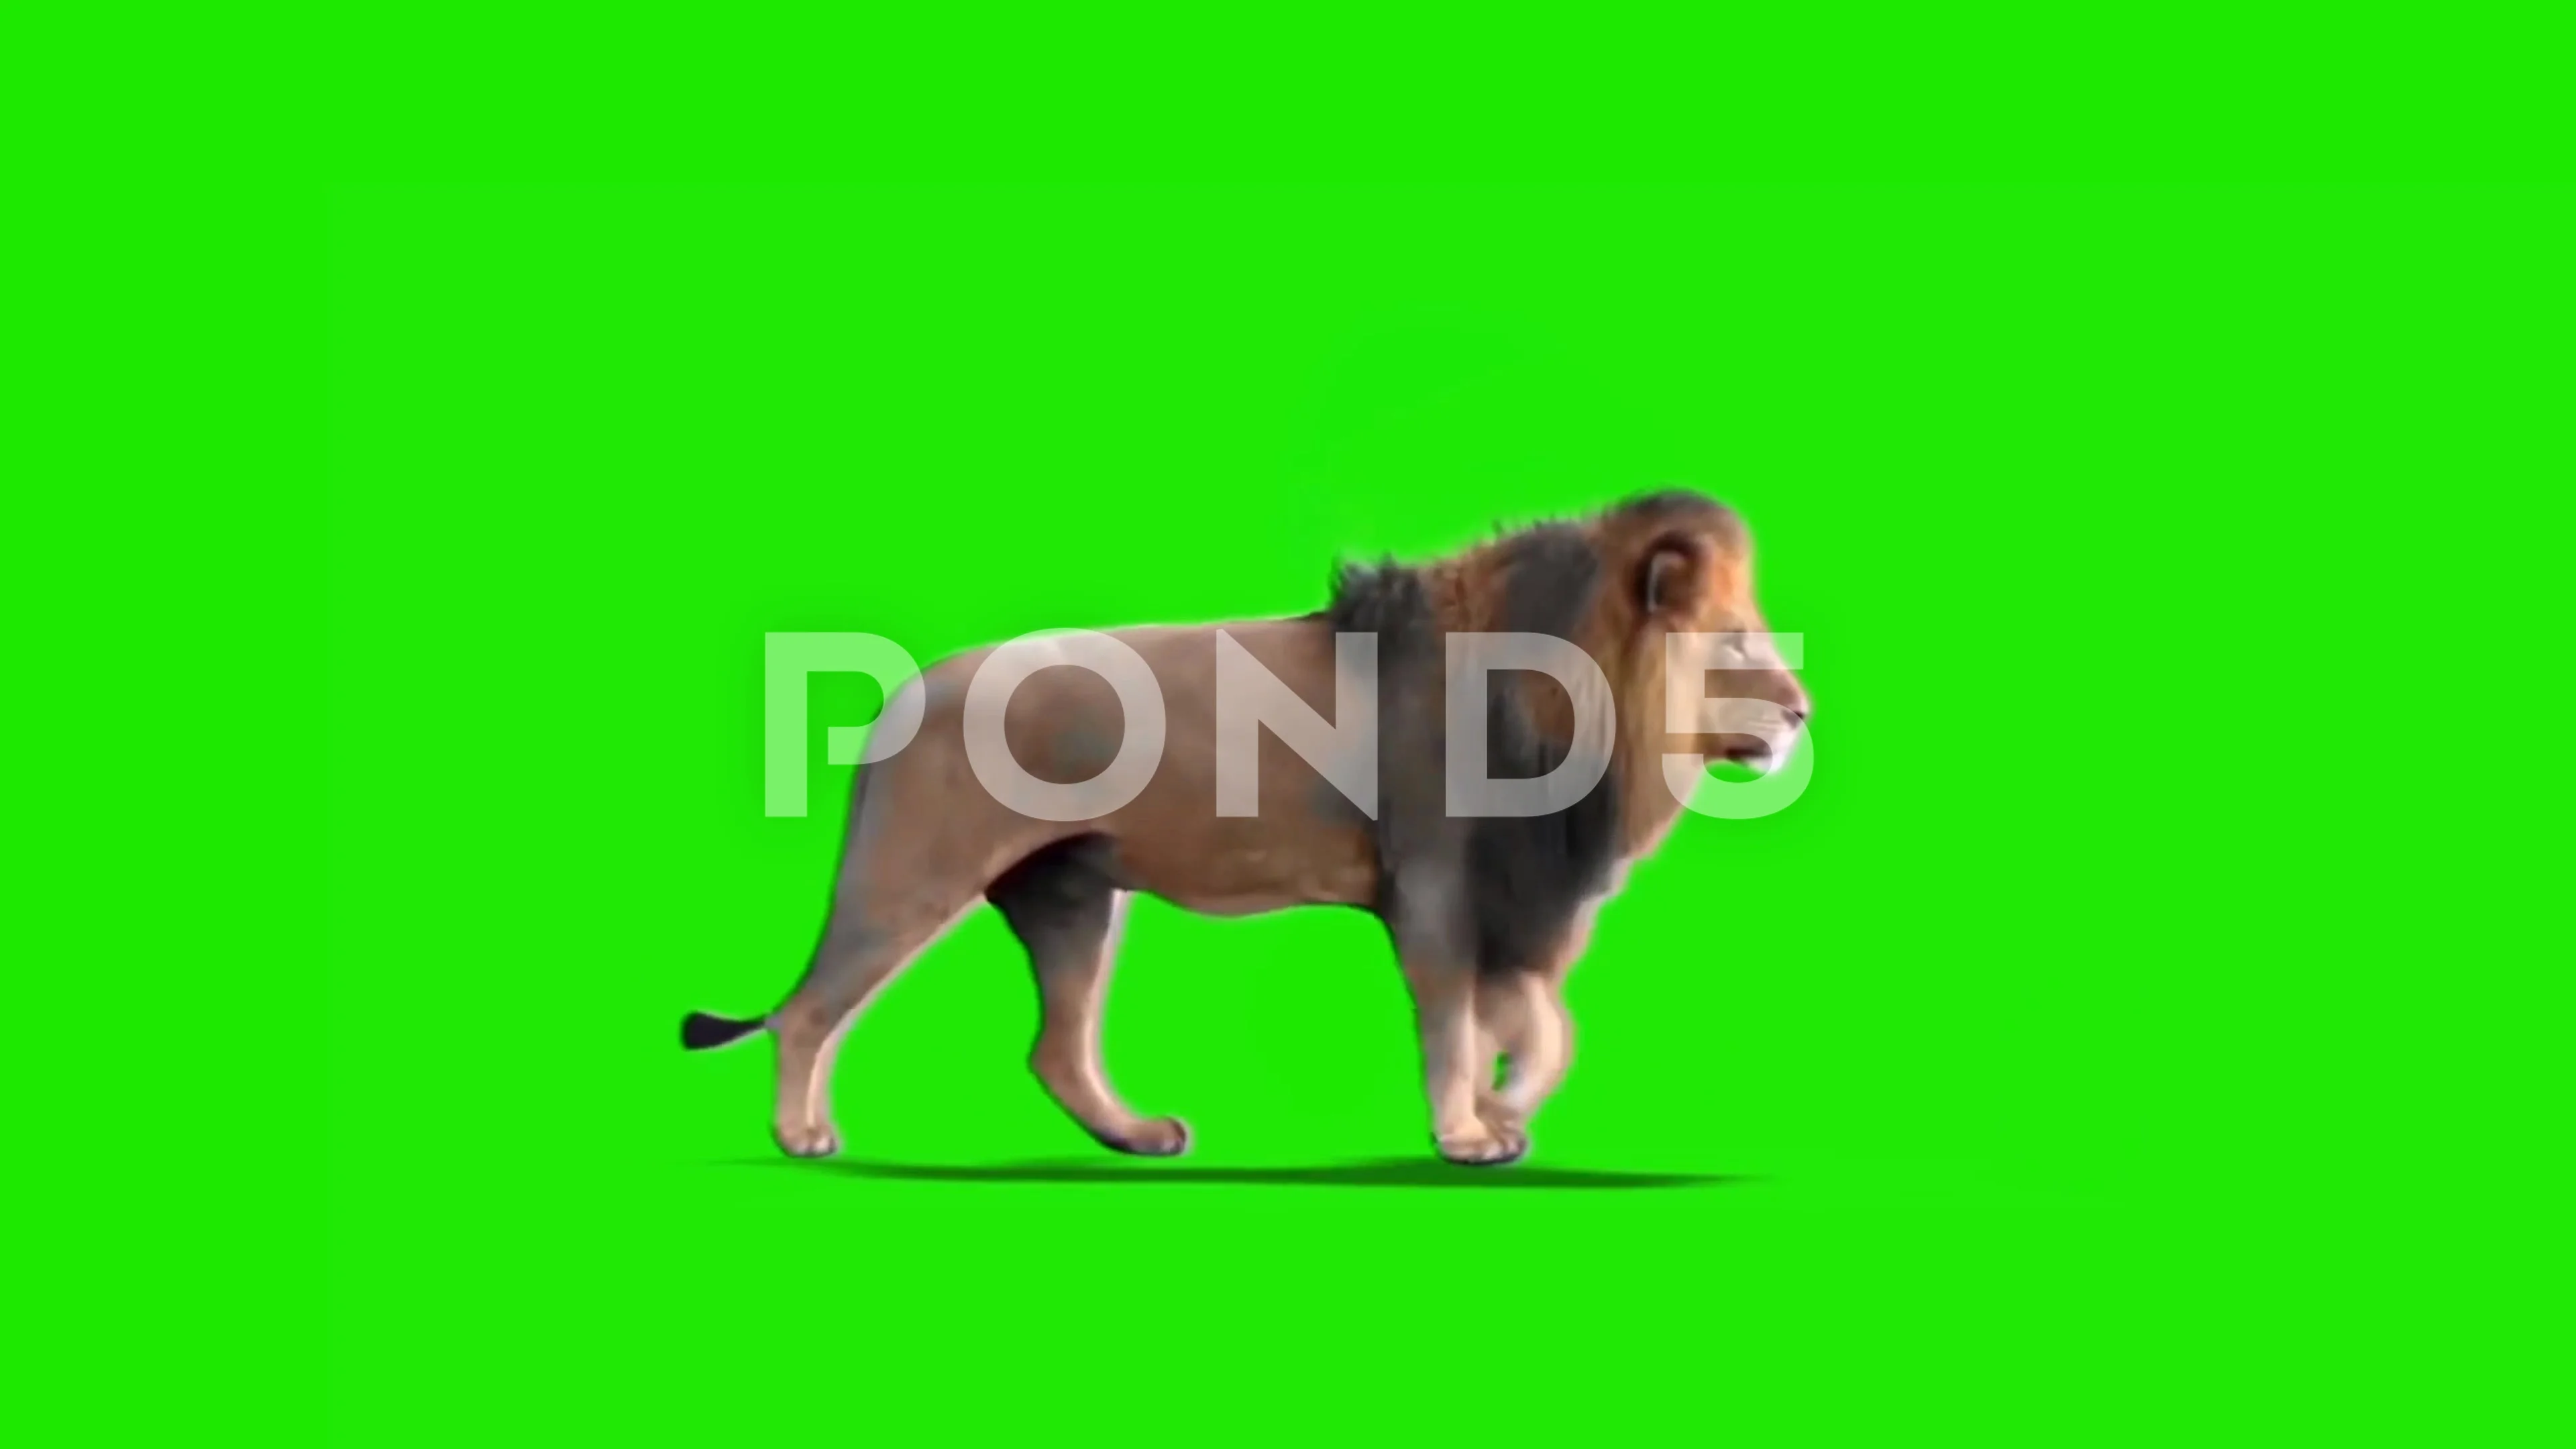 Sư tử - Màn hình xanh lá cây: Ngao du trên đồng cỏ xanh tươi cùng với hình ảnh sư tử trên màn hình xanh lá cây sẽ mang đến cho bạn một không gian hoang dã bao la và kích thích sự tò mò của bạn.